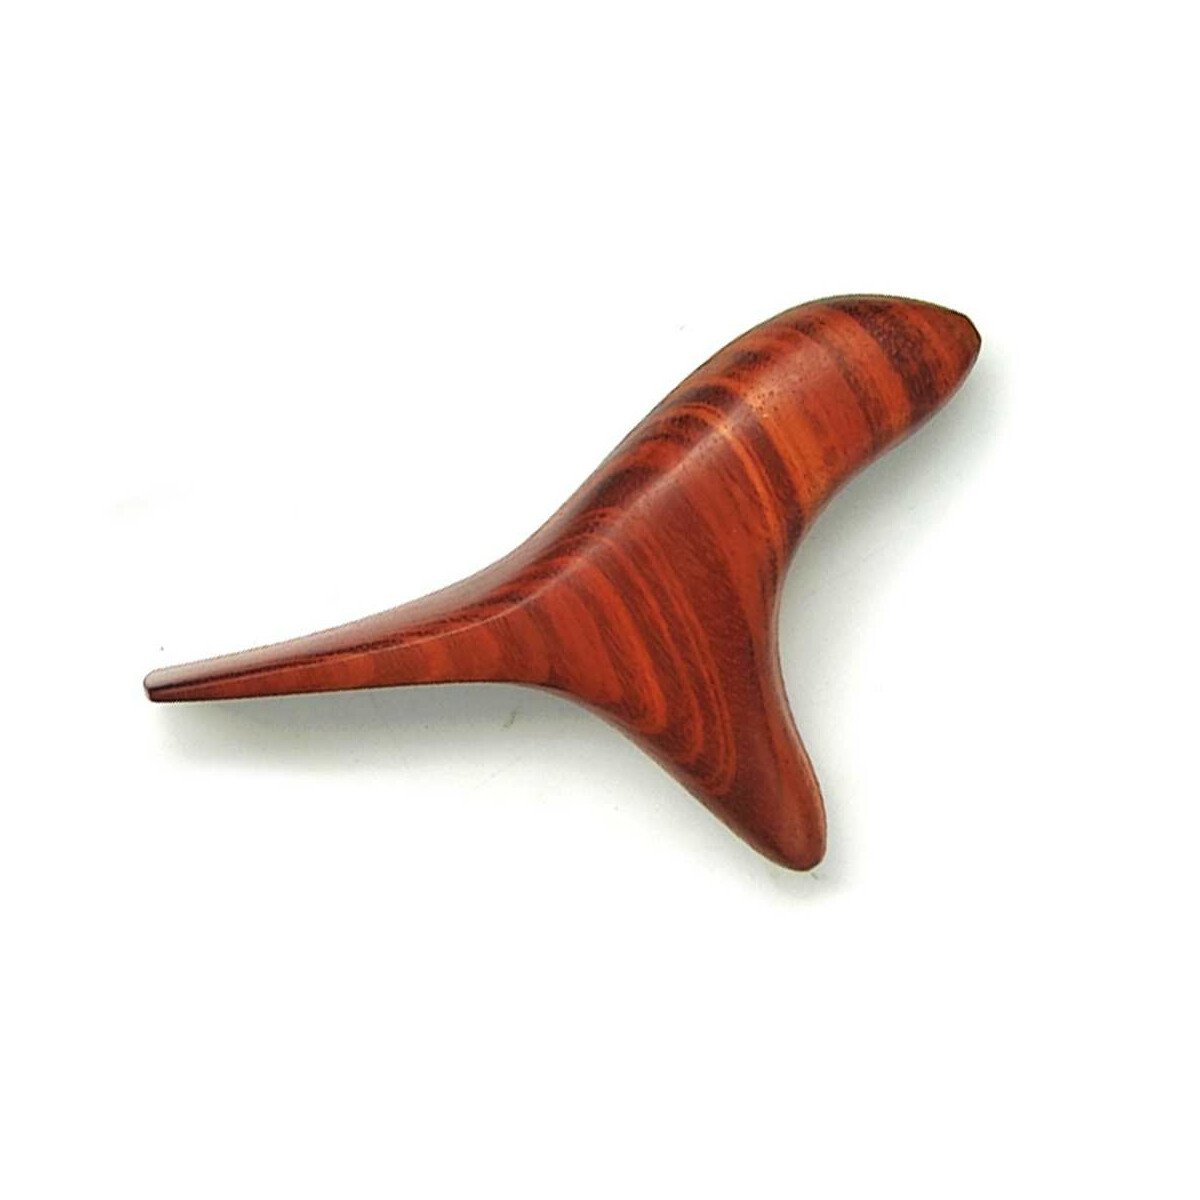 Ausilio per massaggi in legno, forma: Uccello tricorno Birdy